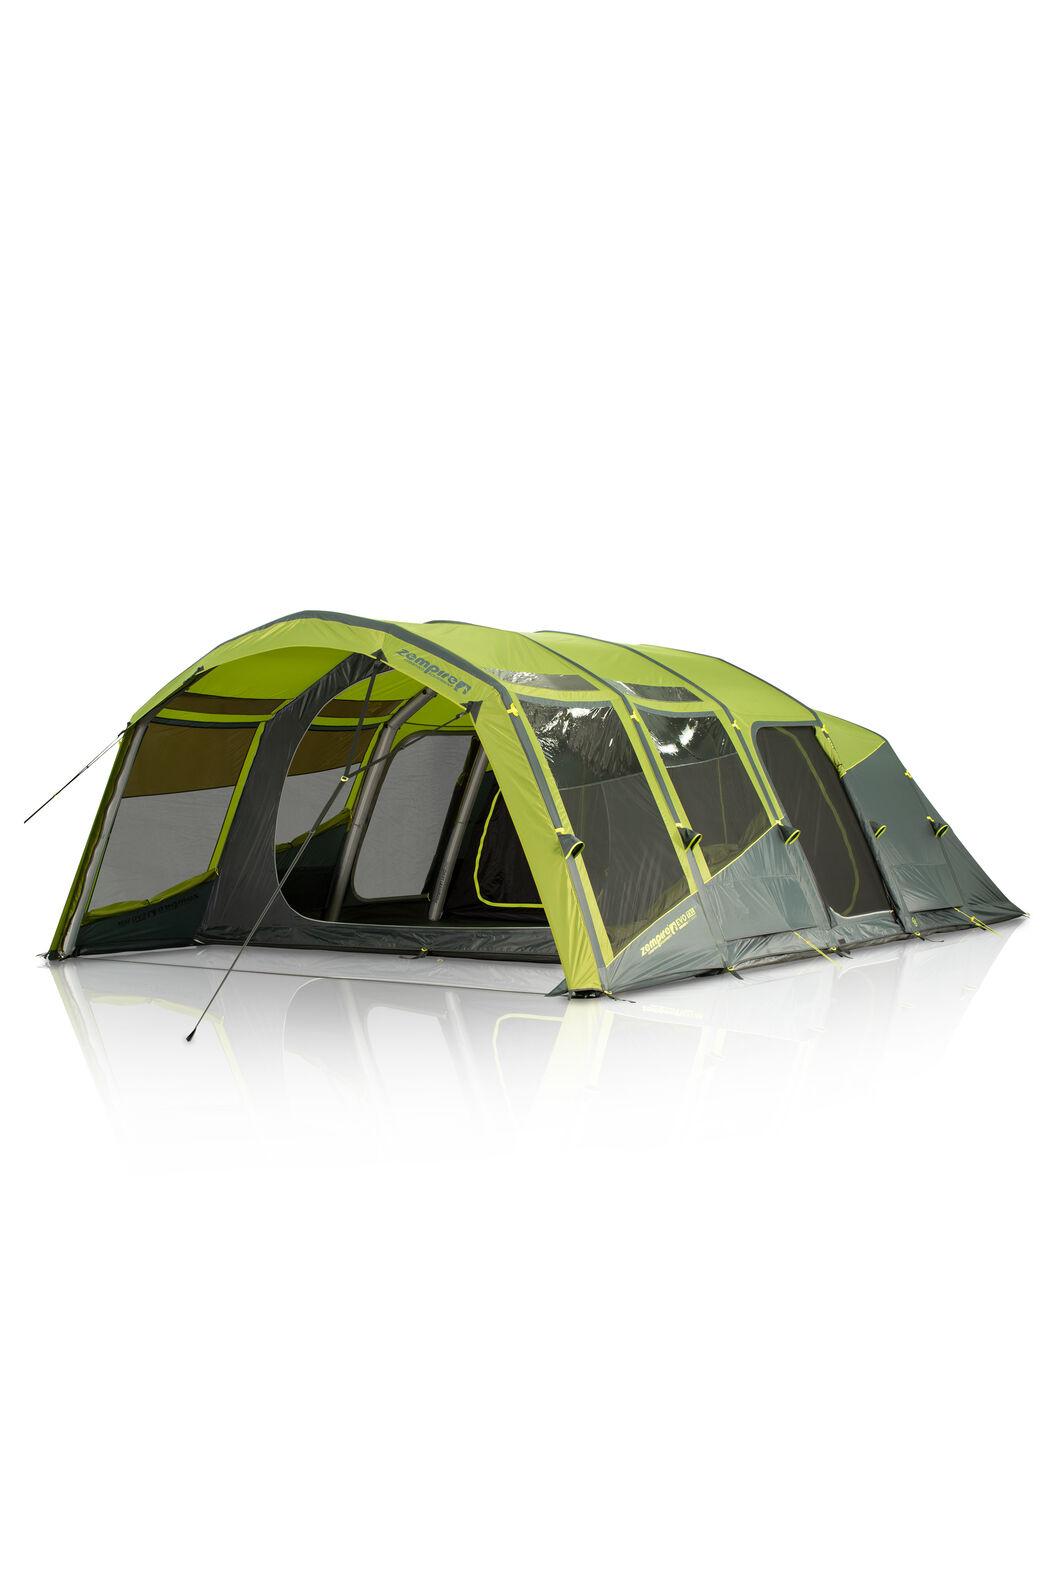 Zempire Evo TXL V2 Six Person+ Air Tent, GREEN/GREY, hi-res